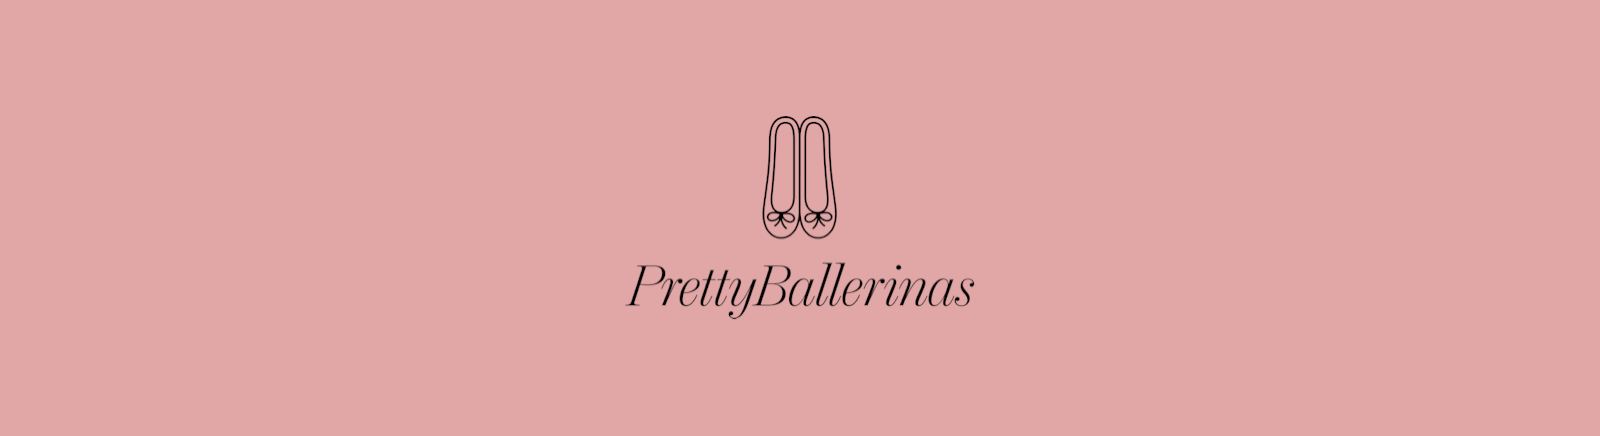 Pretty Ballerinas Boots für Damen im Online-Shop von GISY kaufen